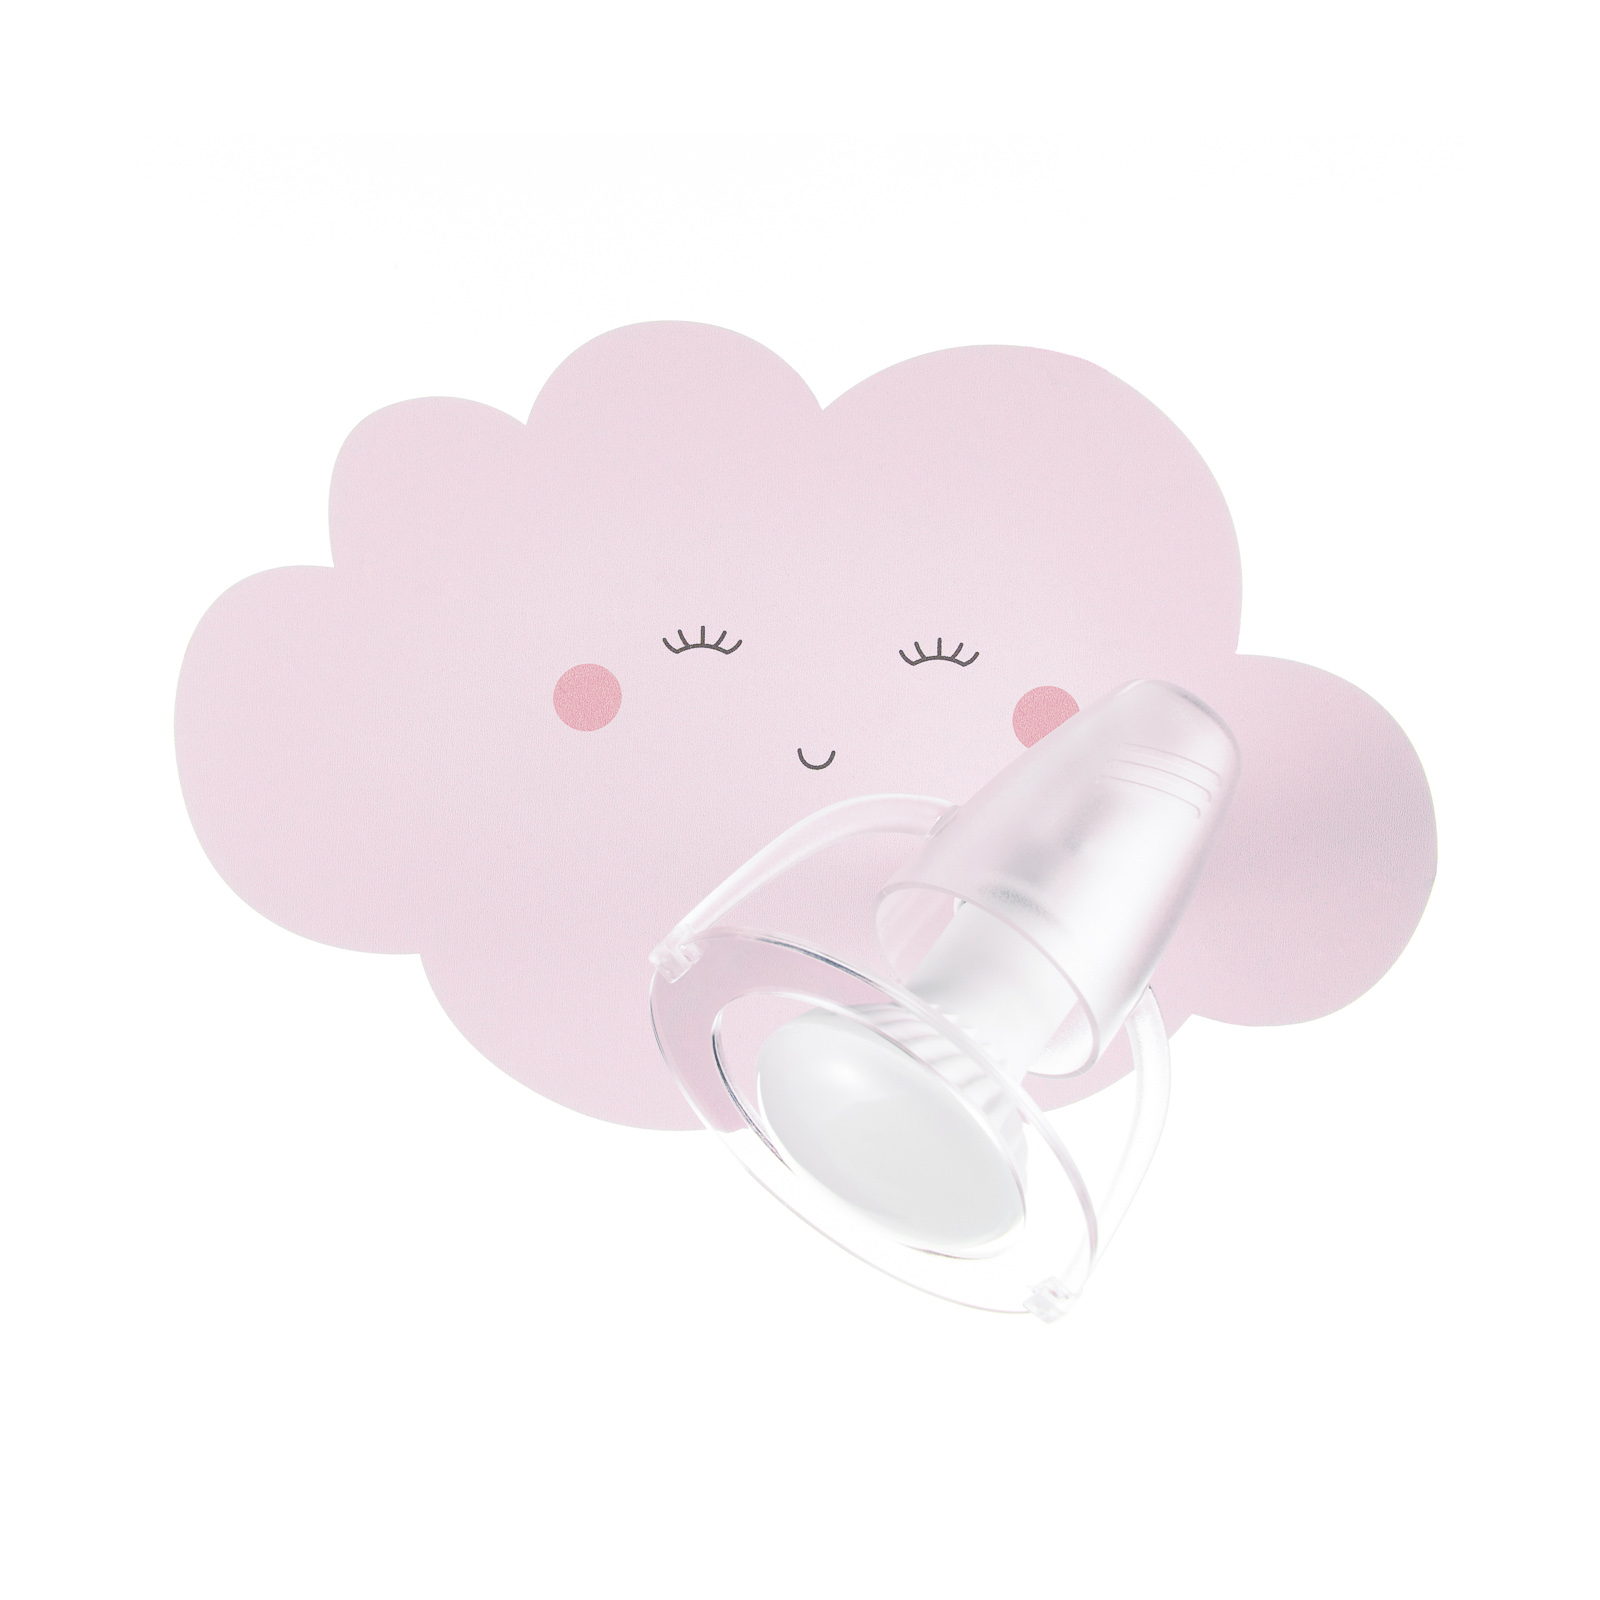 Wandlamp Wolkengezicht in roze met spot